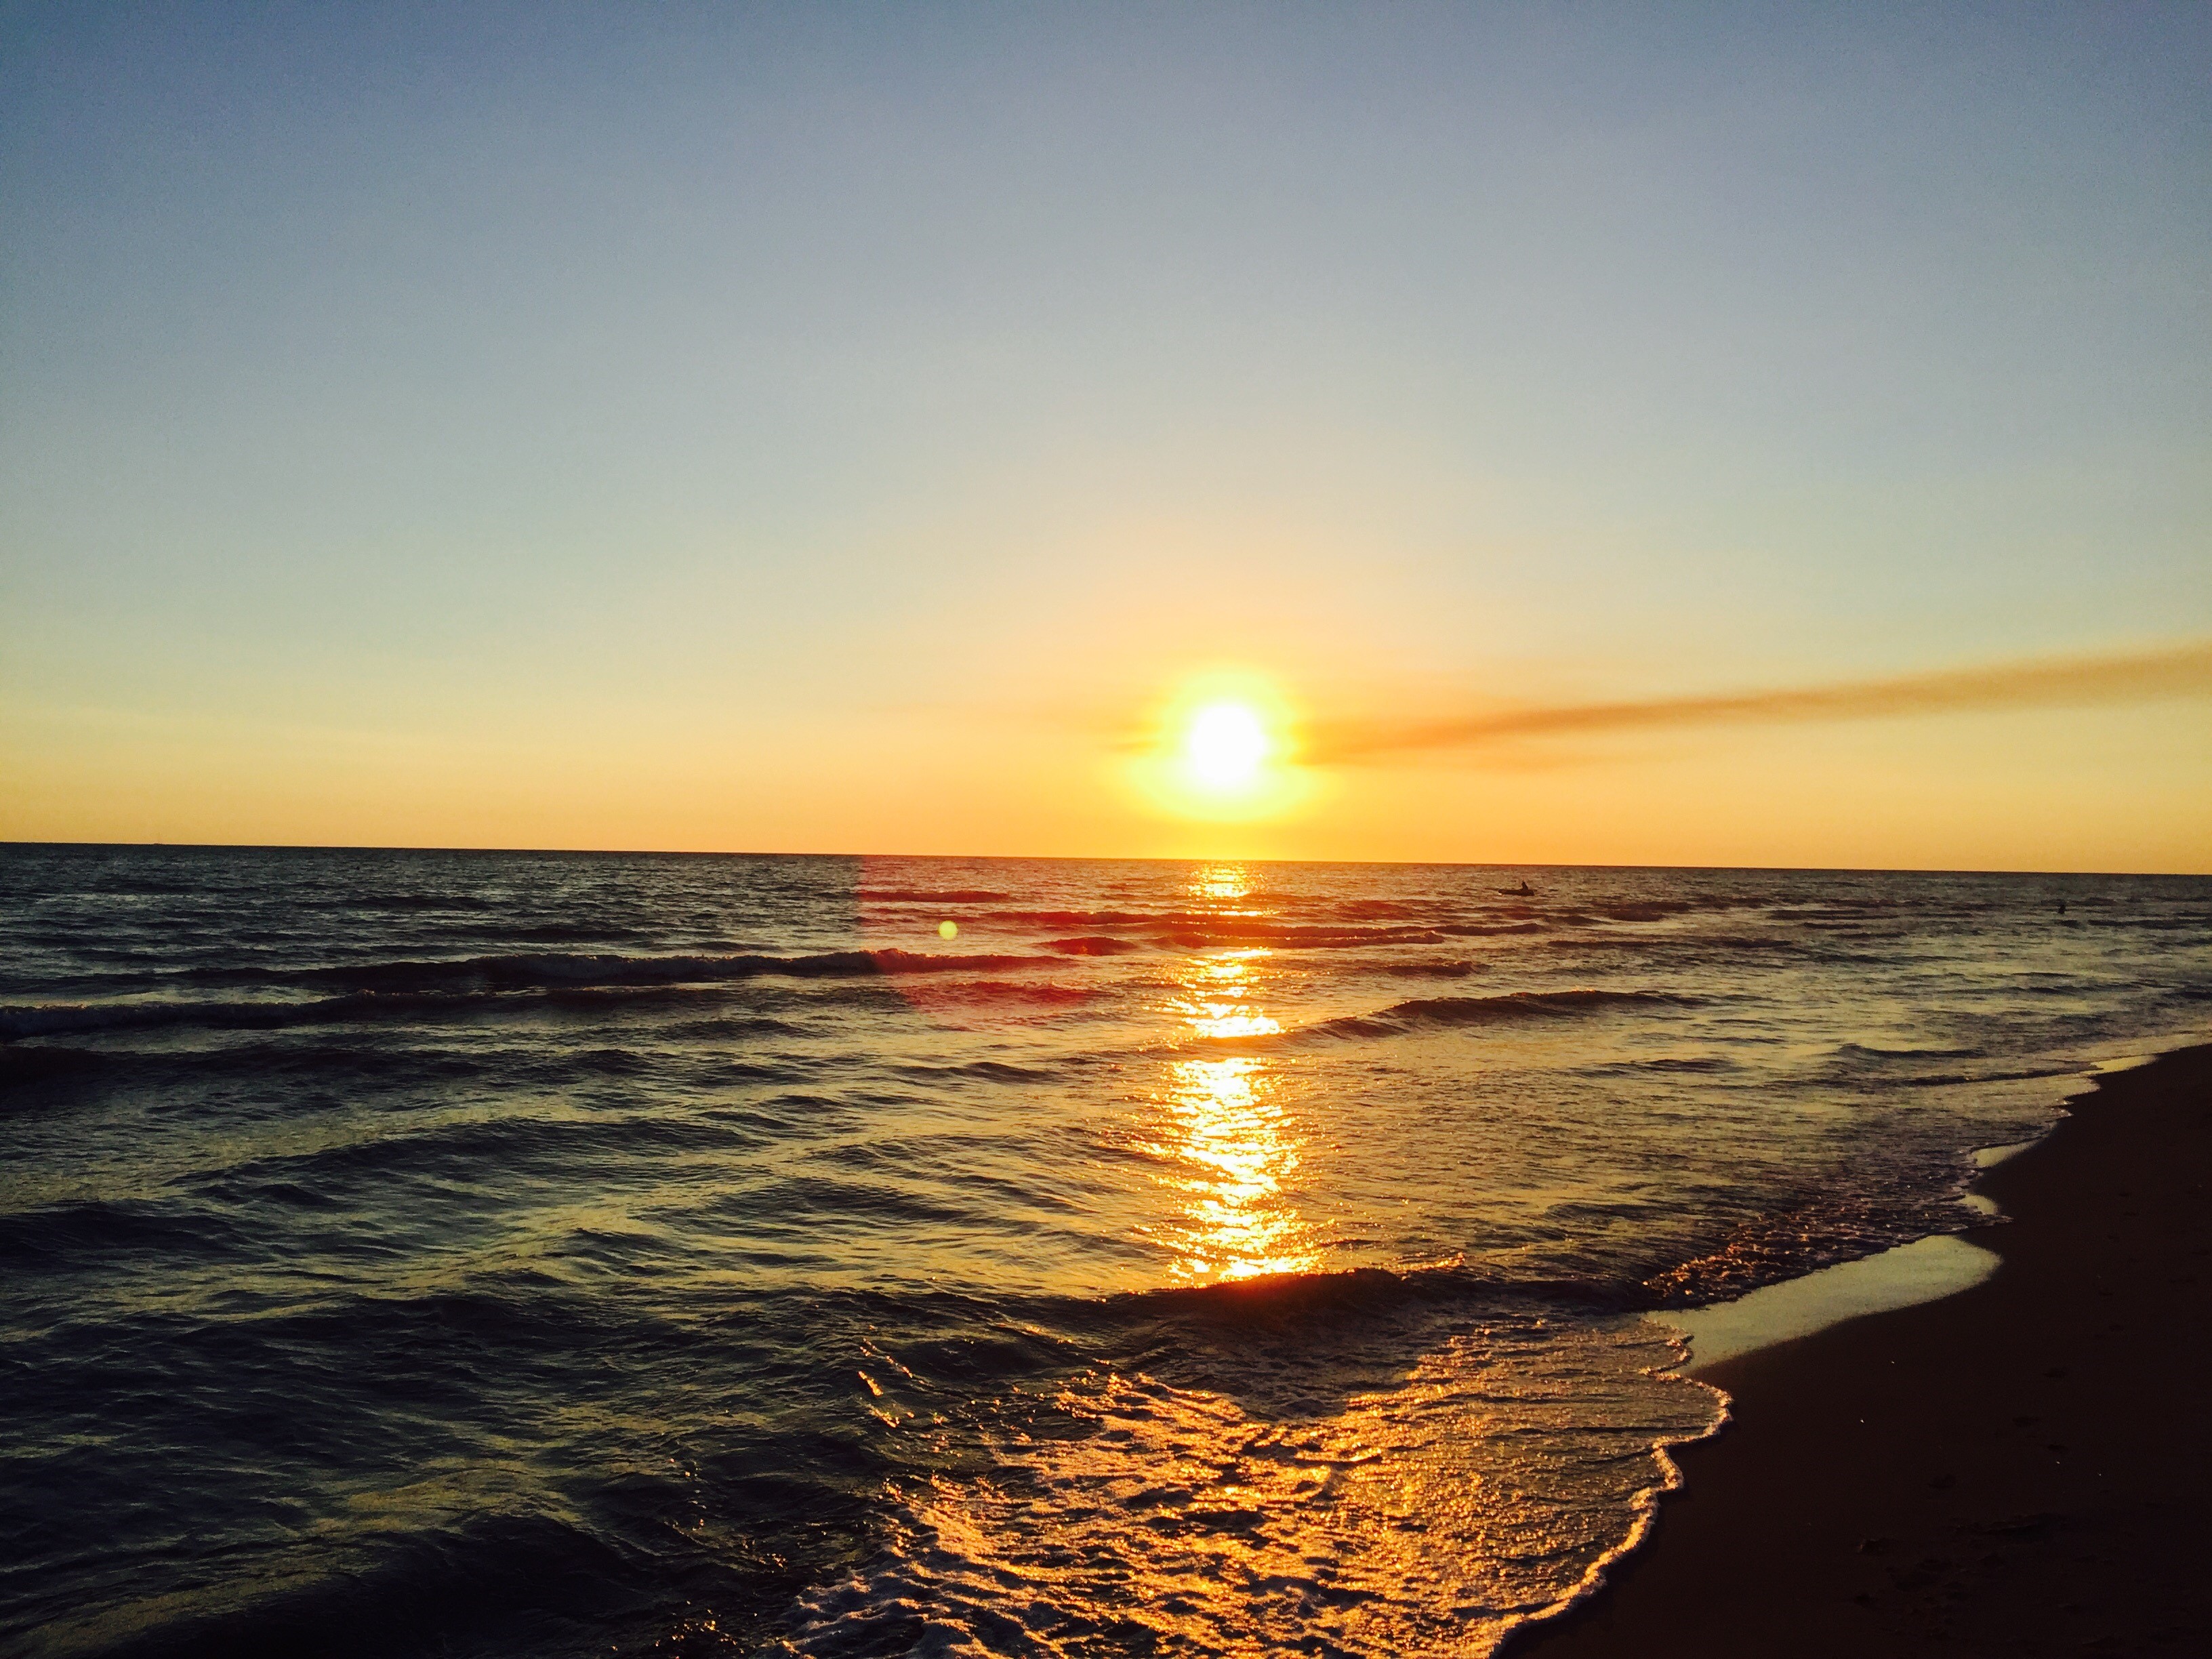 file/ELEMENTO_NEWSLETTER/22983/Mare_spiaggia_tramonto_sm.jpg